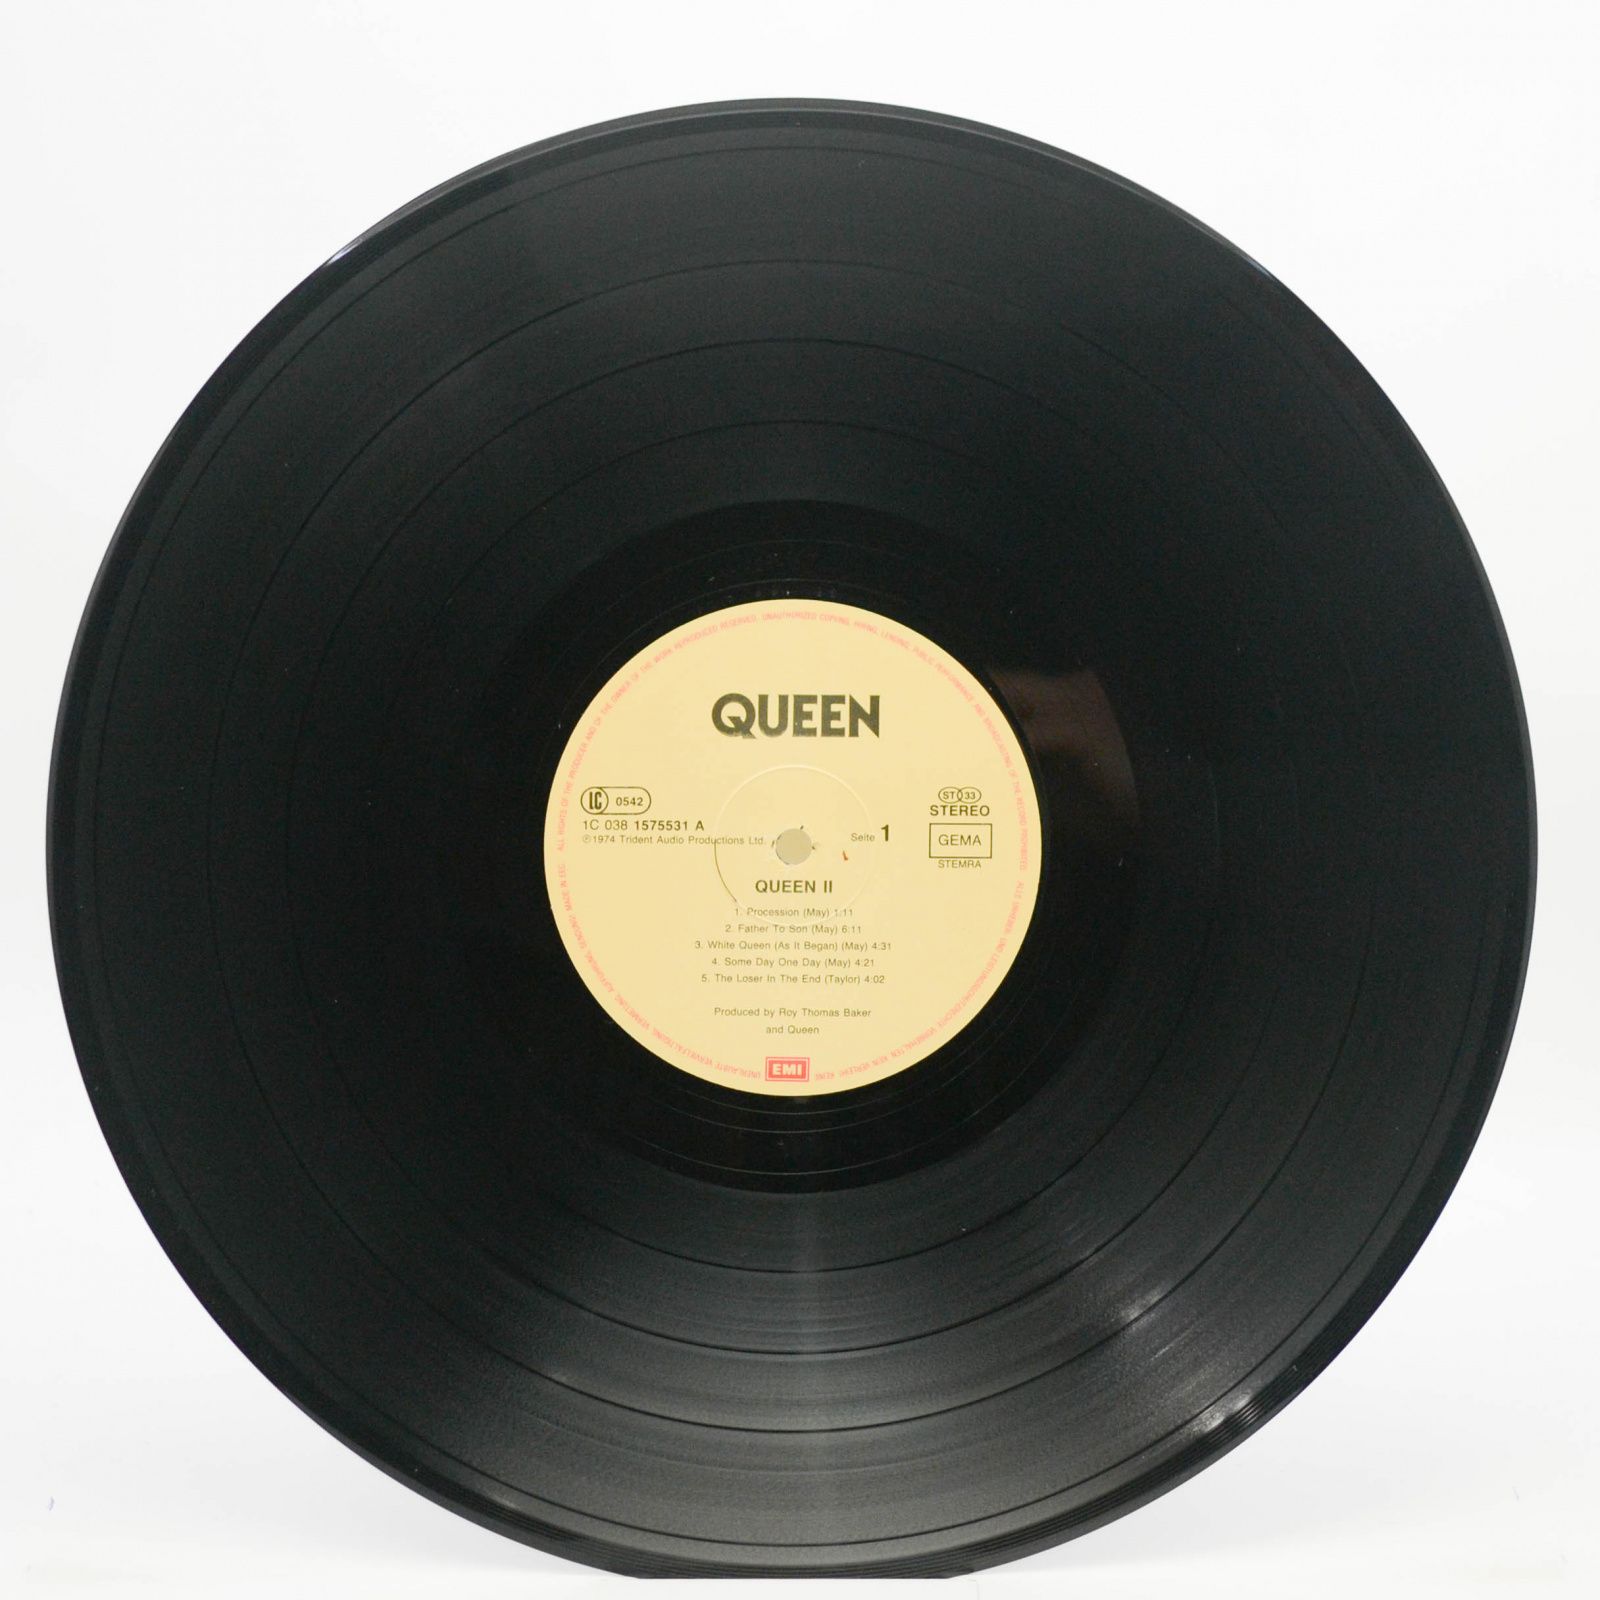 Queen — Queen II, 1974